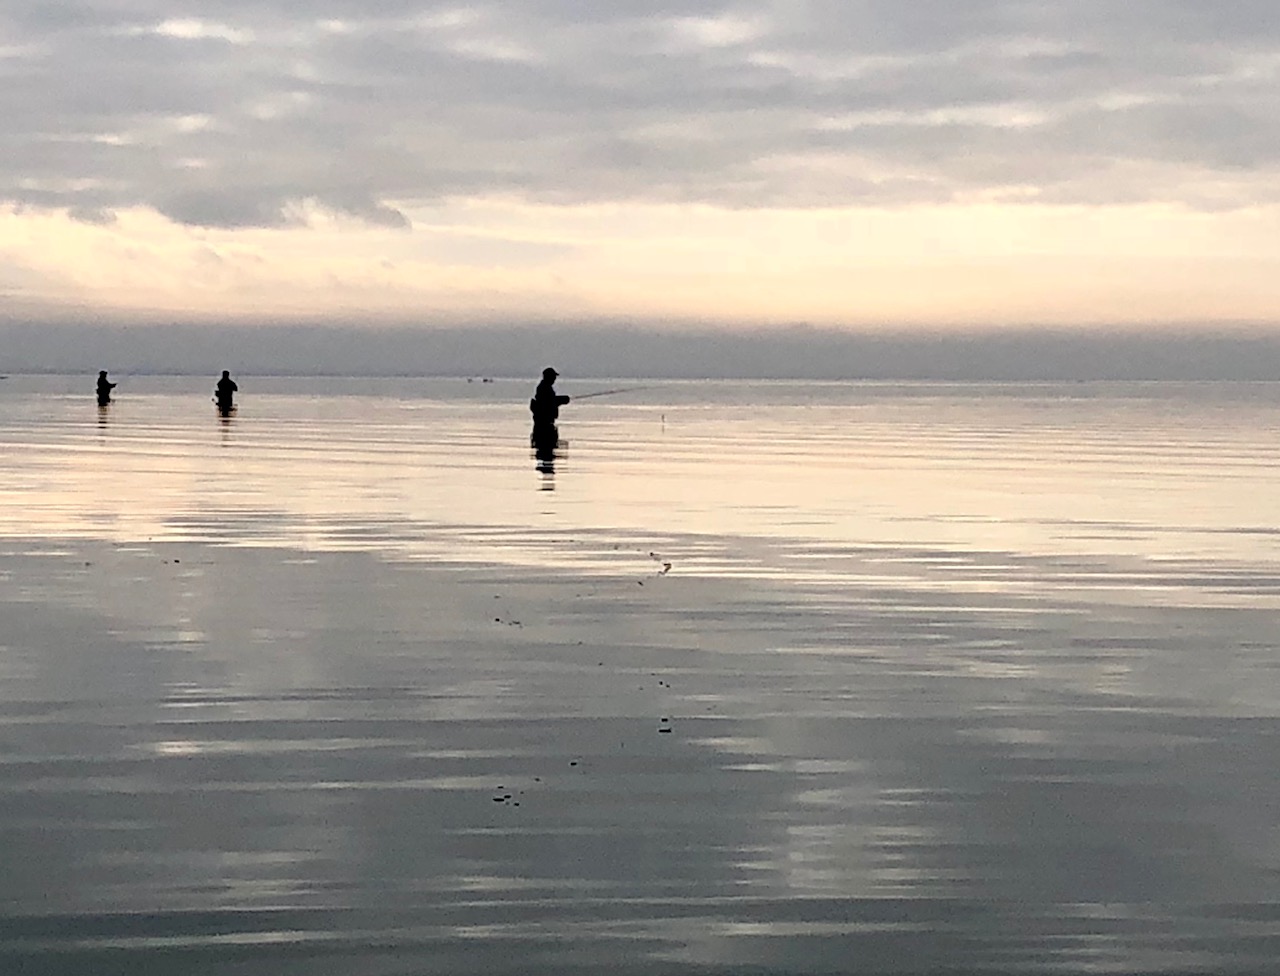 Wade fishing